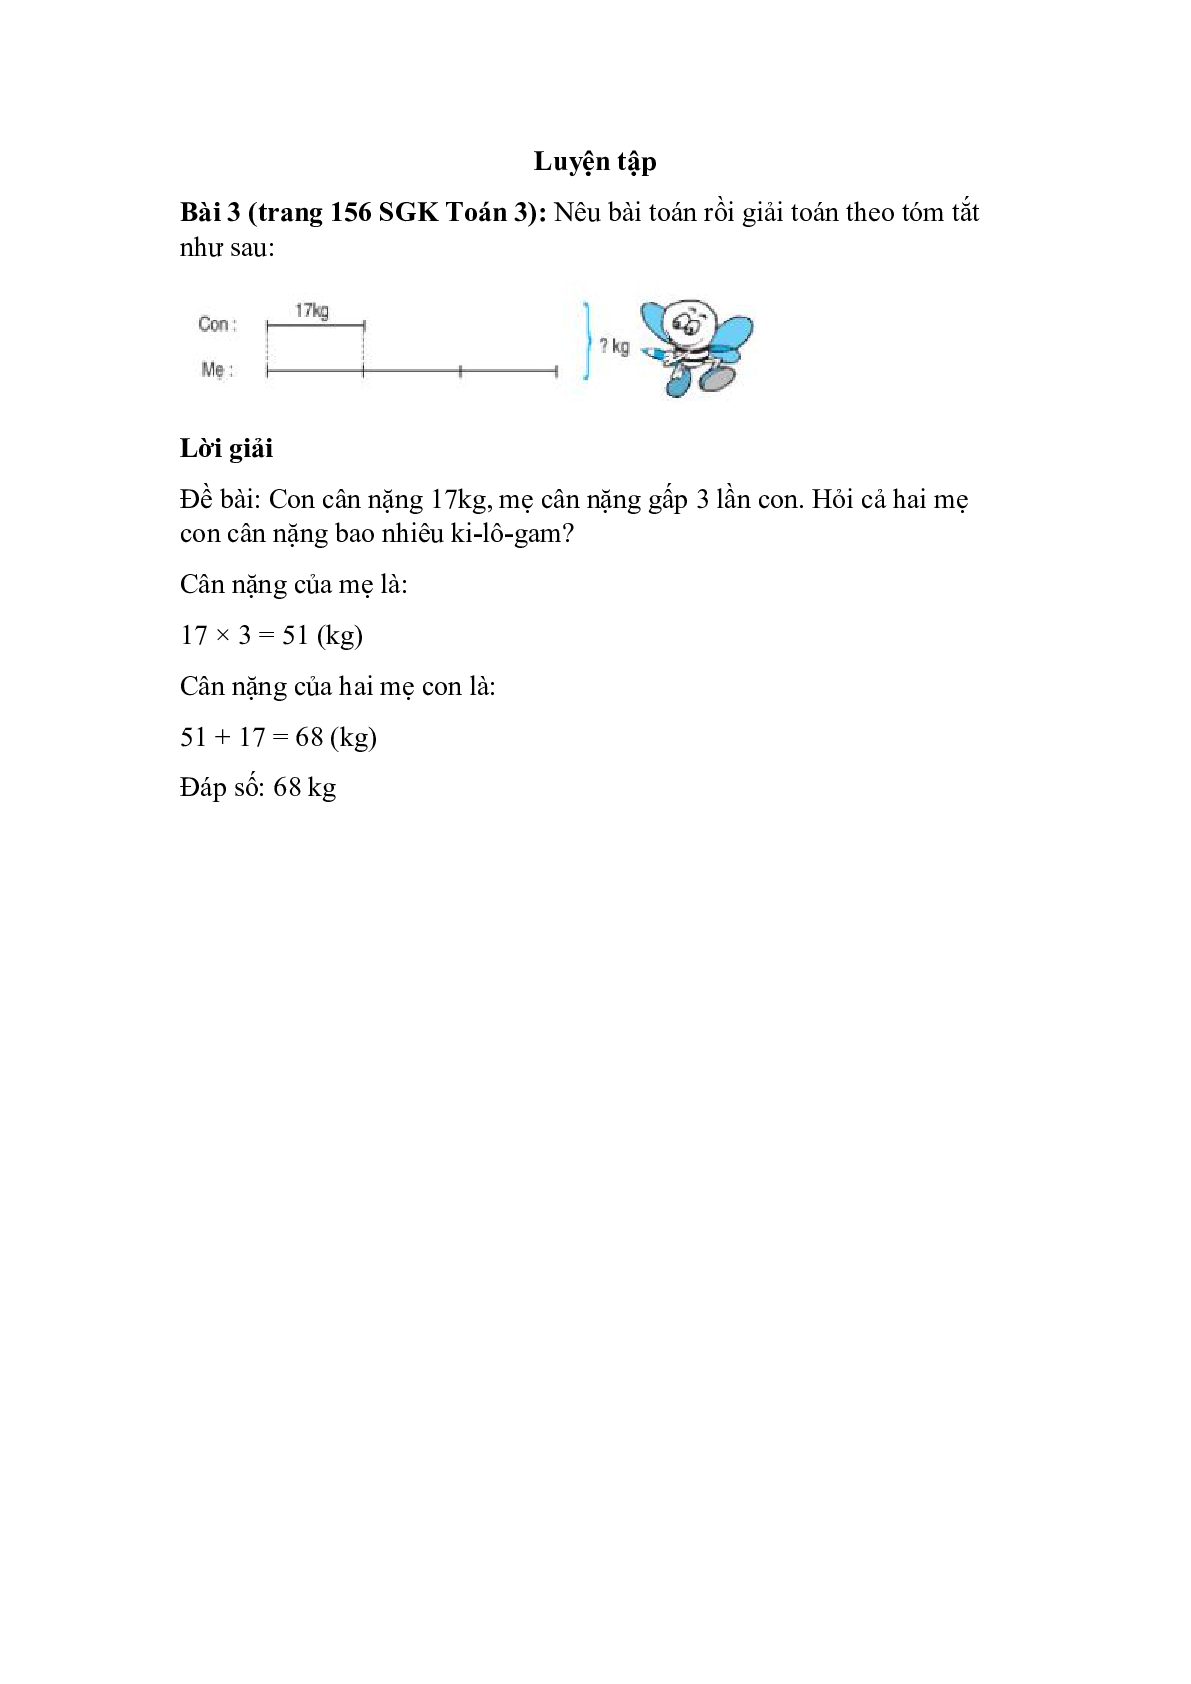 Nêu bài toán rồi giải toán theo tóm tắt như sau (trang 1)